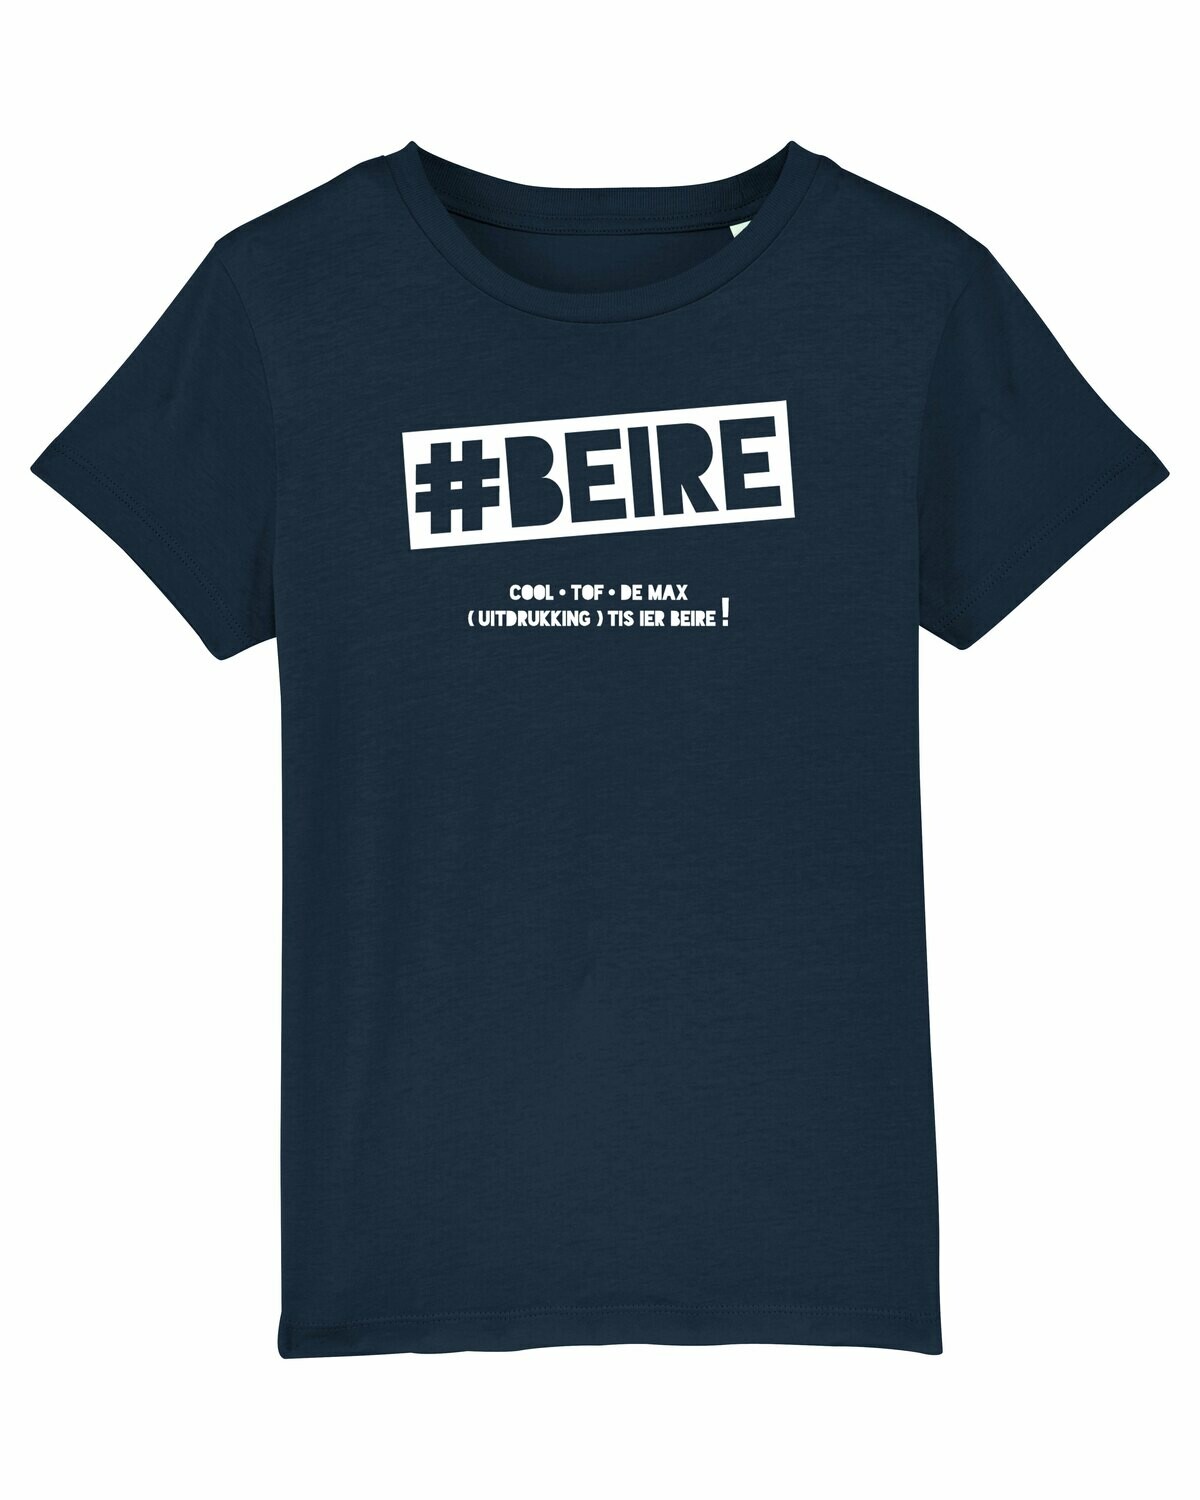 Kids T-shirt #Beire